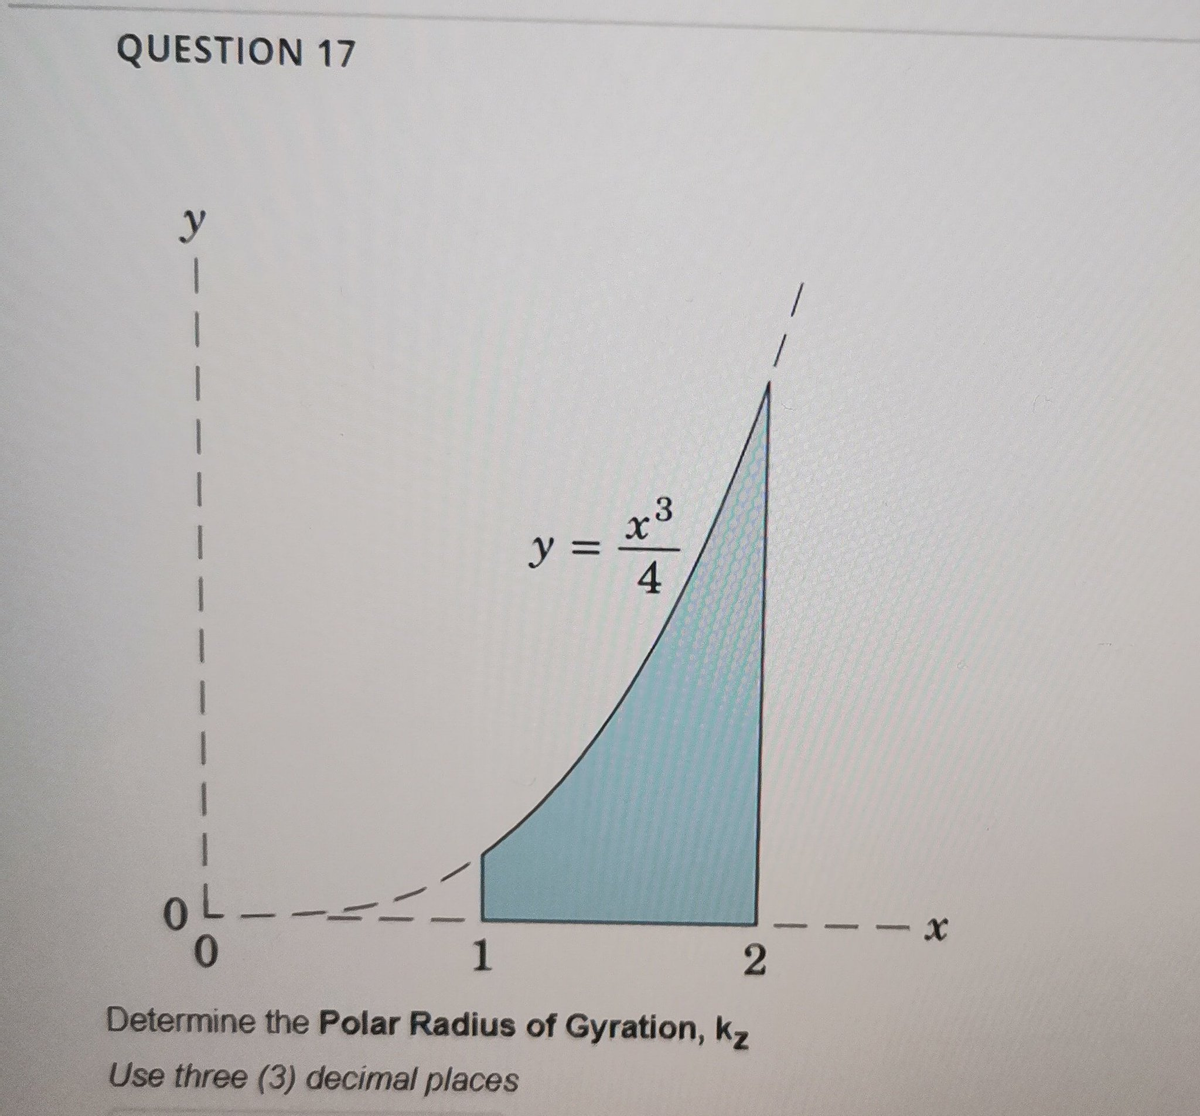 QUESTION 17
y
1
1
1
1
1
OL
0
+3
y =
4
1
2
Determine the Polar Radius of Gyration, kz
Use three (3) decimal places